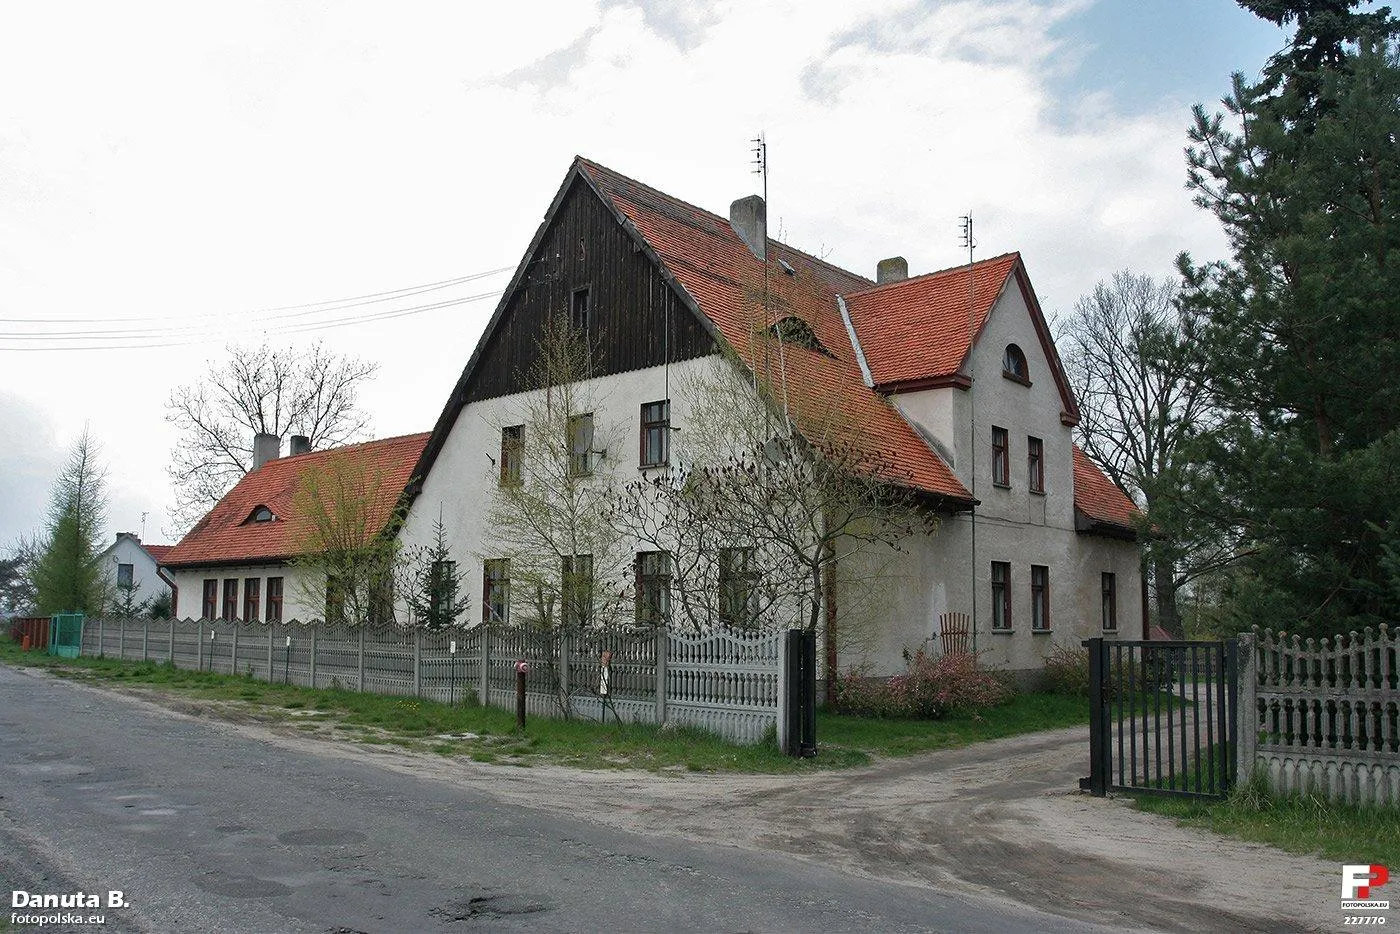 Photo showing: Pierwotnie dom starców, potem szkoła, dziś dom mieszkalny wielorodzinny.